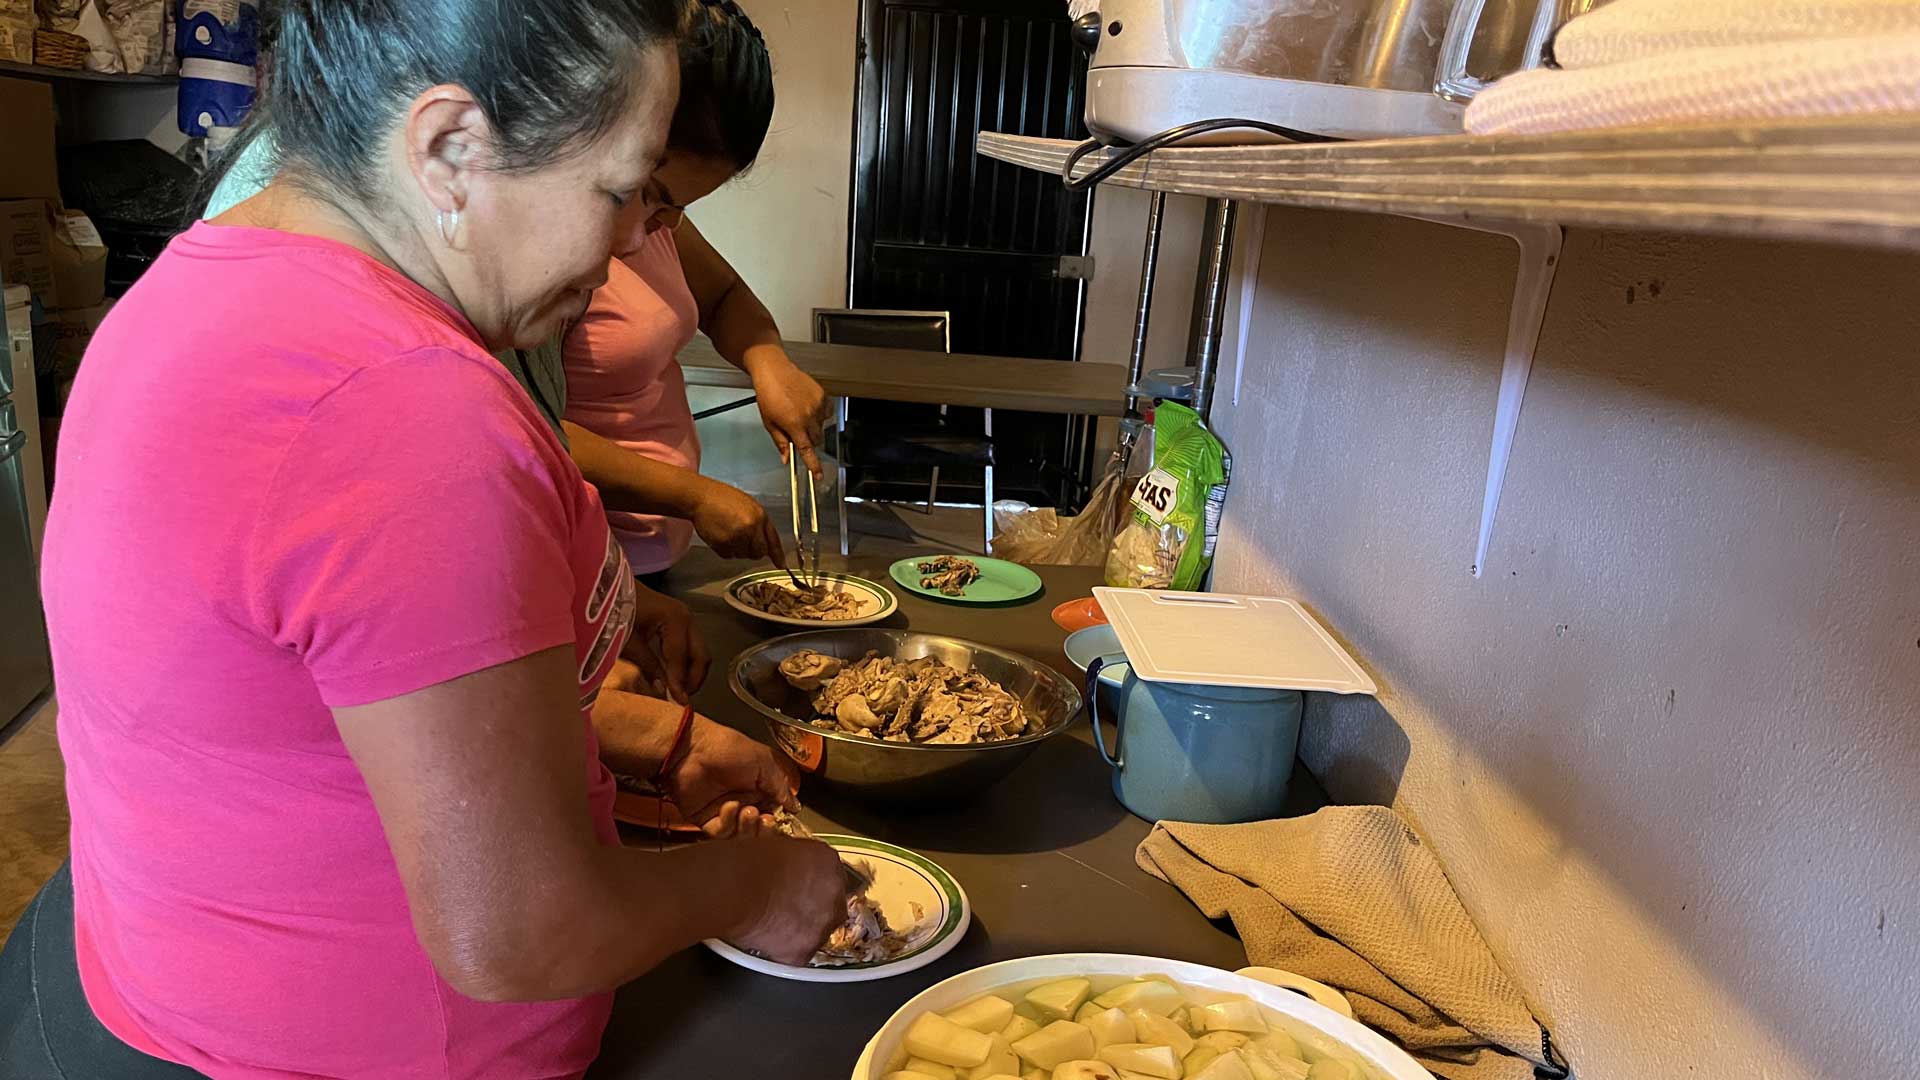 Women prepare food for dozens of families at Centro de Esperanza migrant shelter in Sonoyta, Sonora.